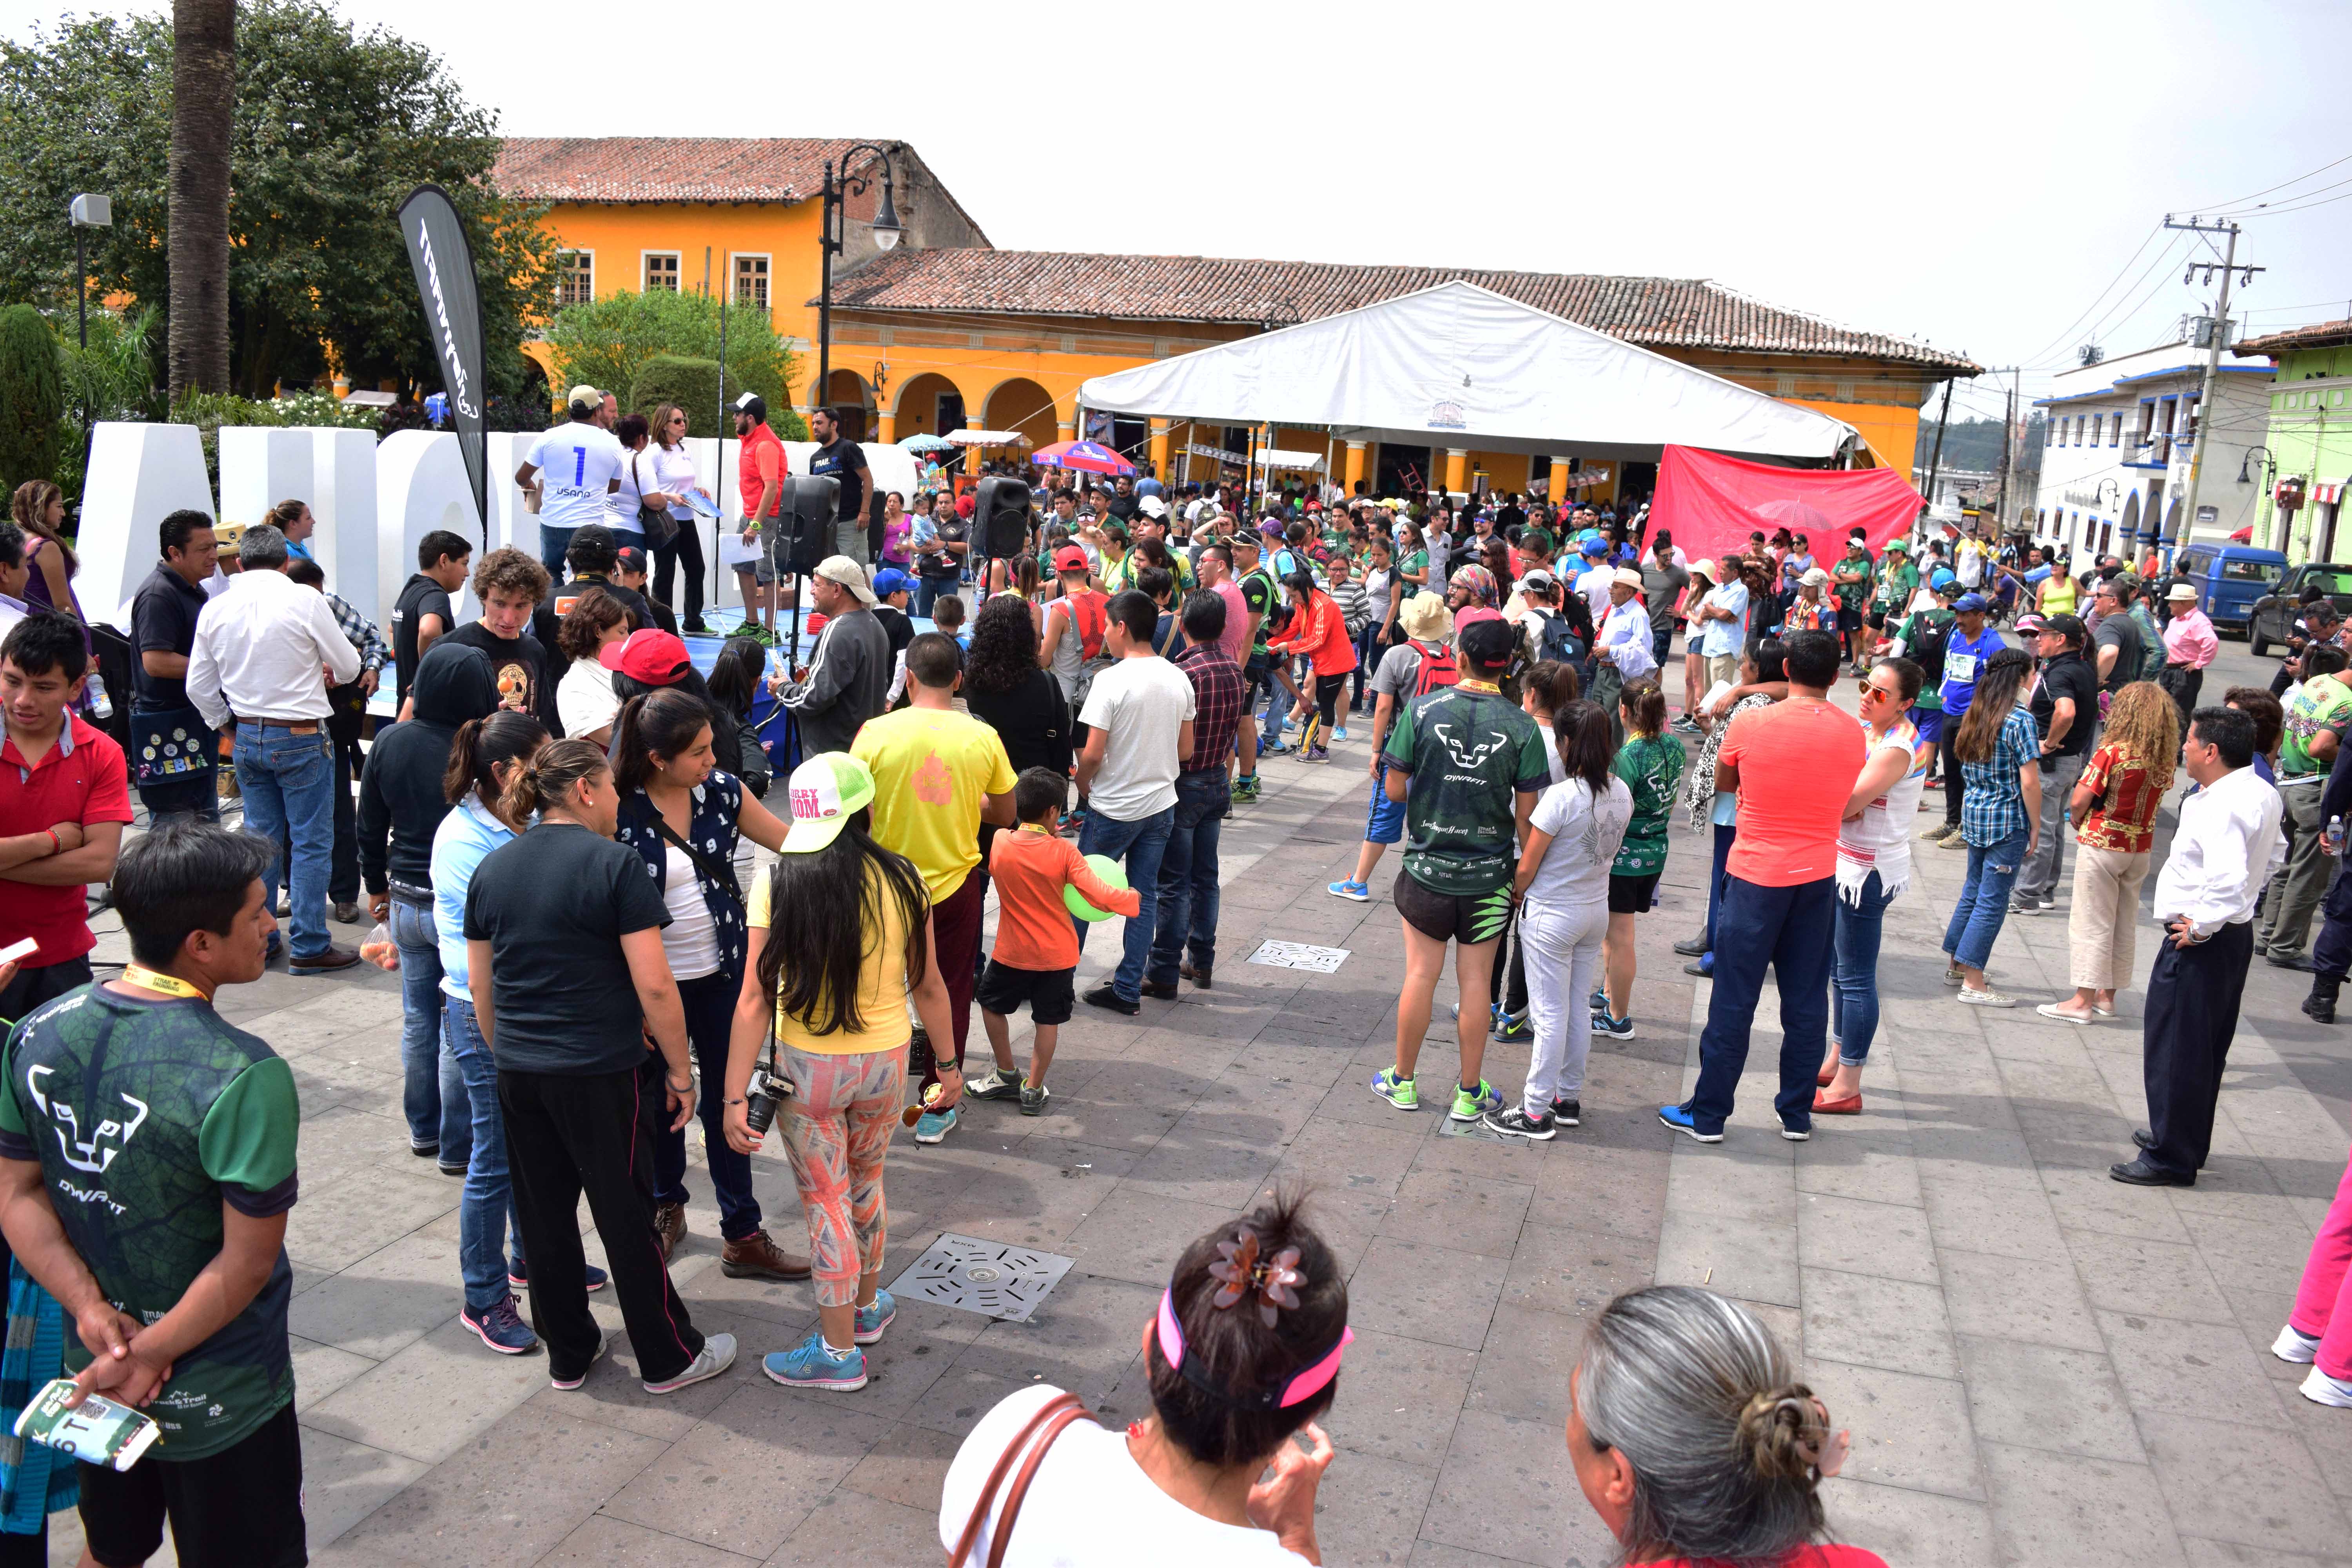 Esperan a cientos de corredores en Ultra Trail de Tlatlauquitepec